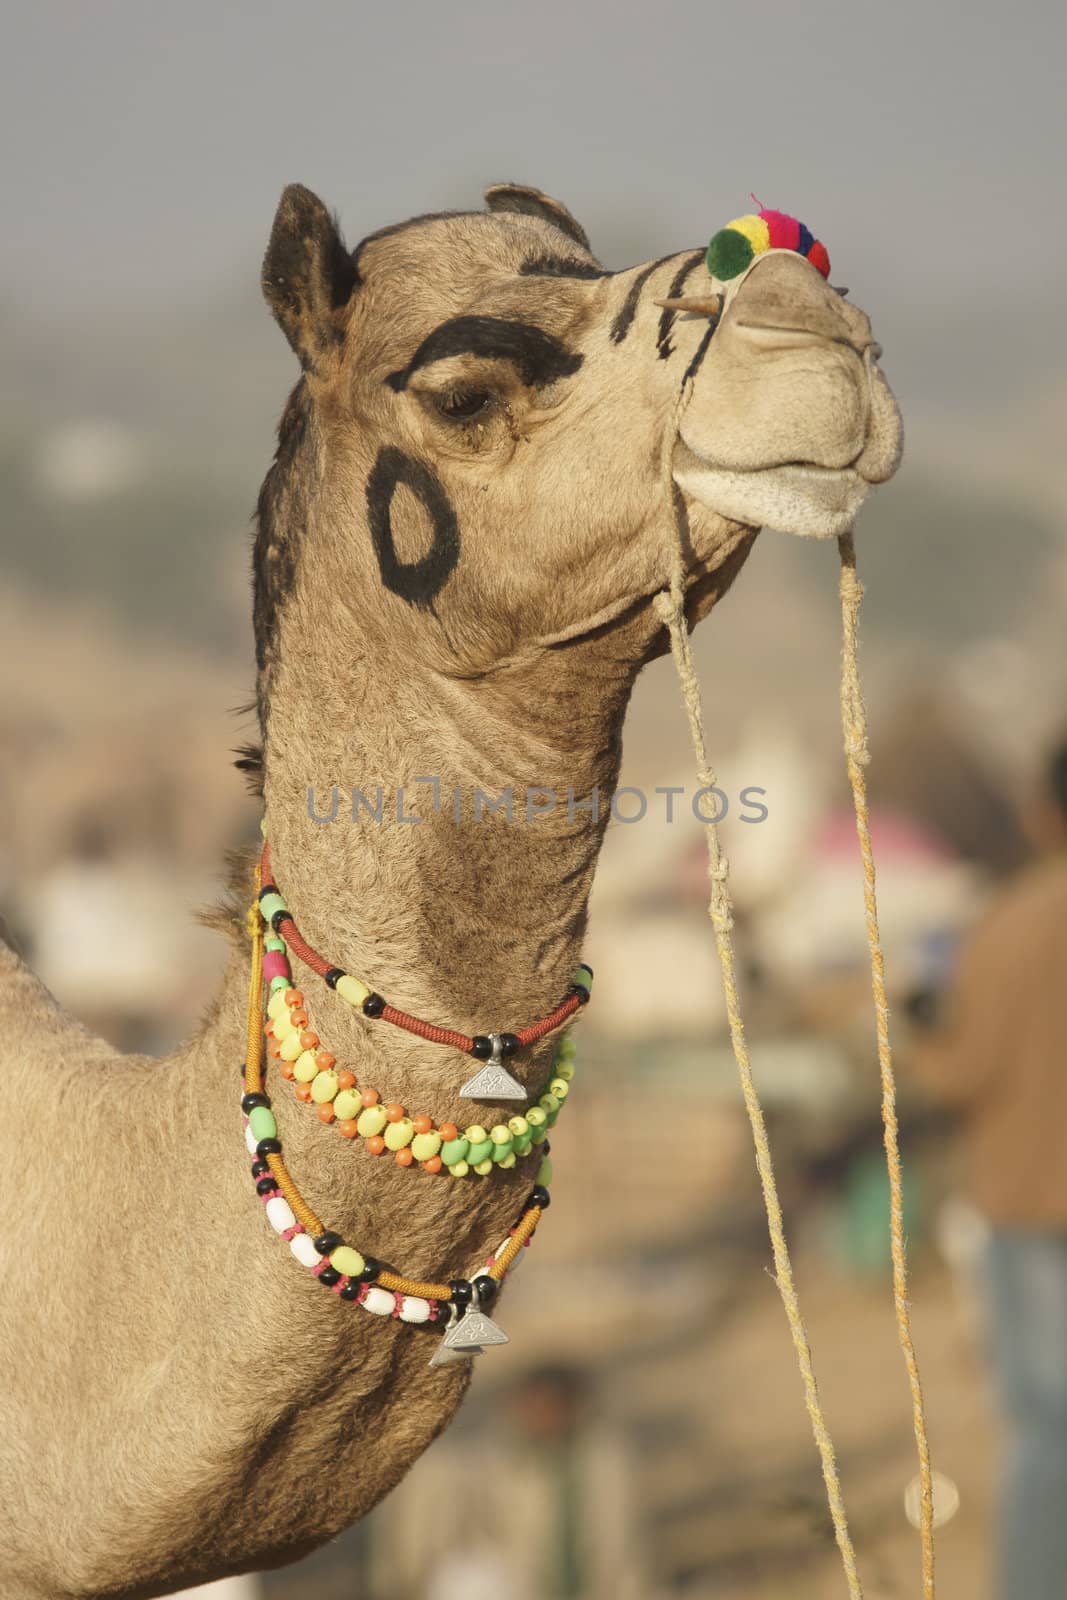 Regal Camel by JeremyRichards